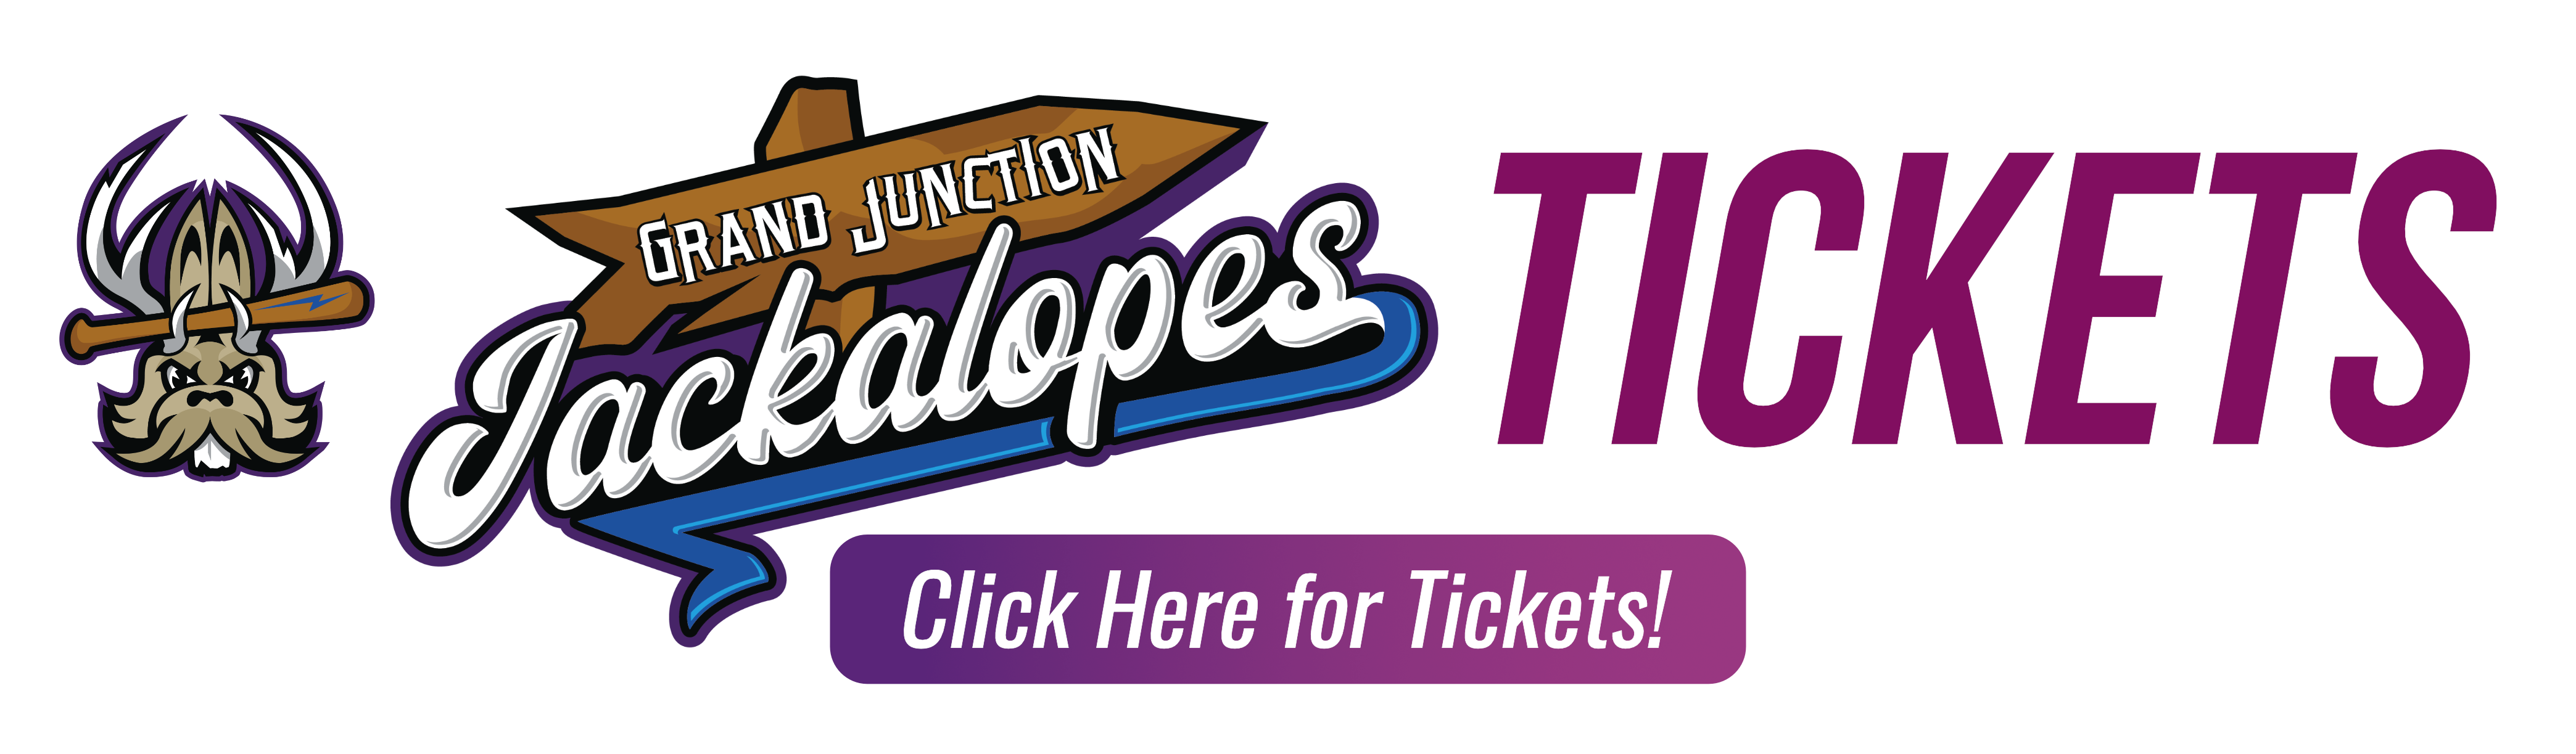 Grand Junction Jackalopes Tickets